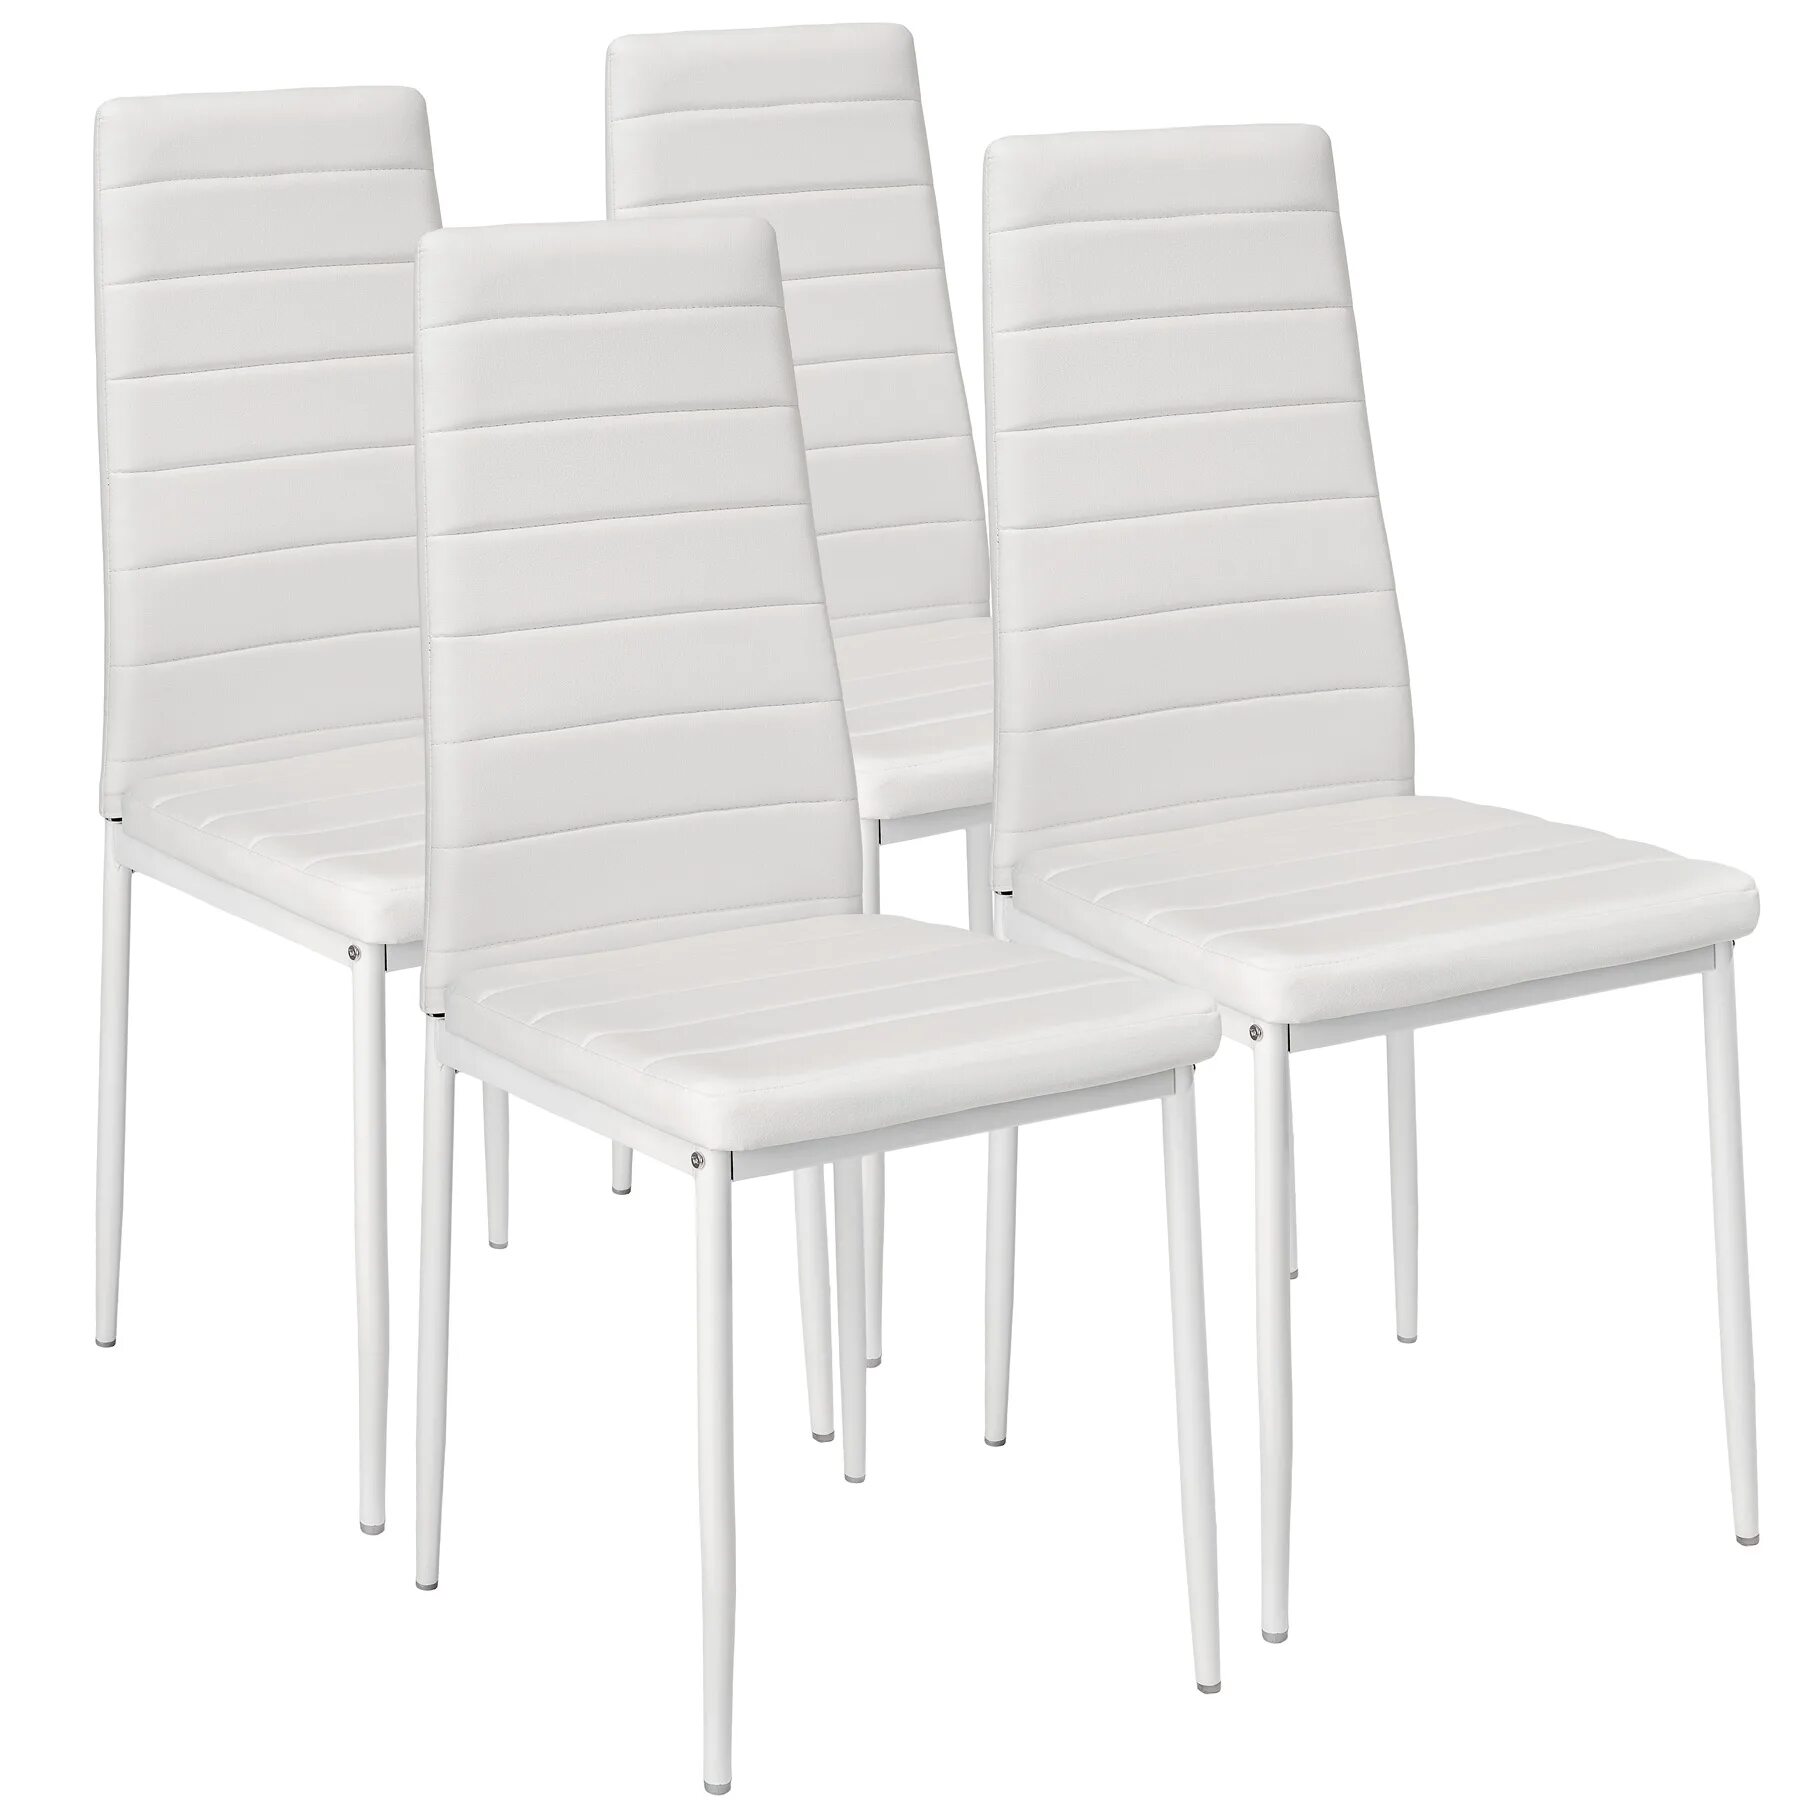 Комплект стульев 4 шт. Stool Group y801-v, белый. Ikea стул кухонный. Стул из экокожи вс-017 2 шт белый. Икеа стулья кухонные мягкие. Купить стул каталог